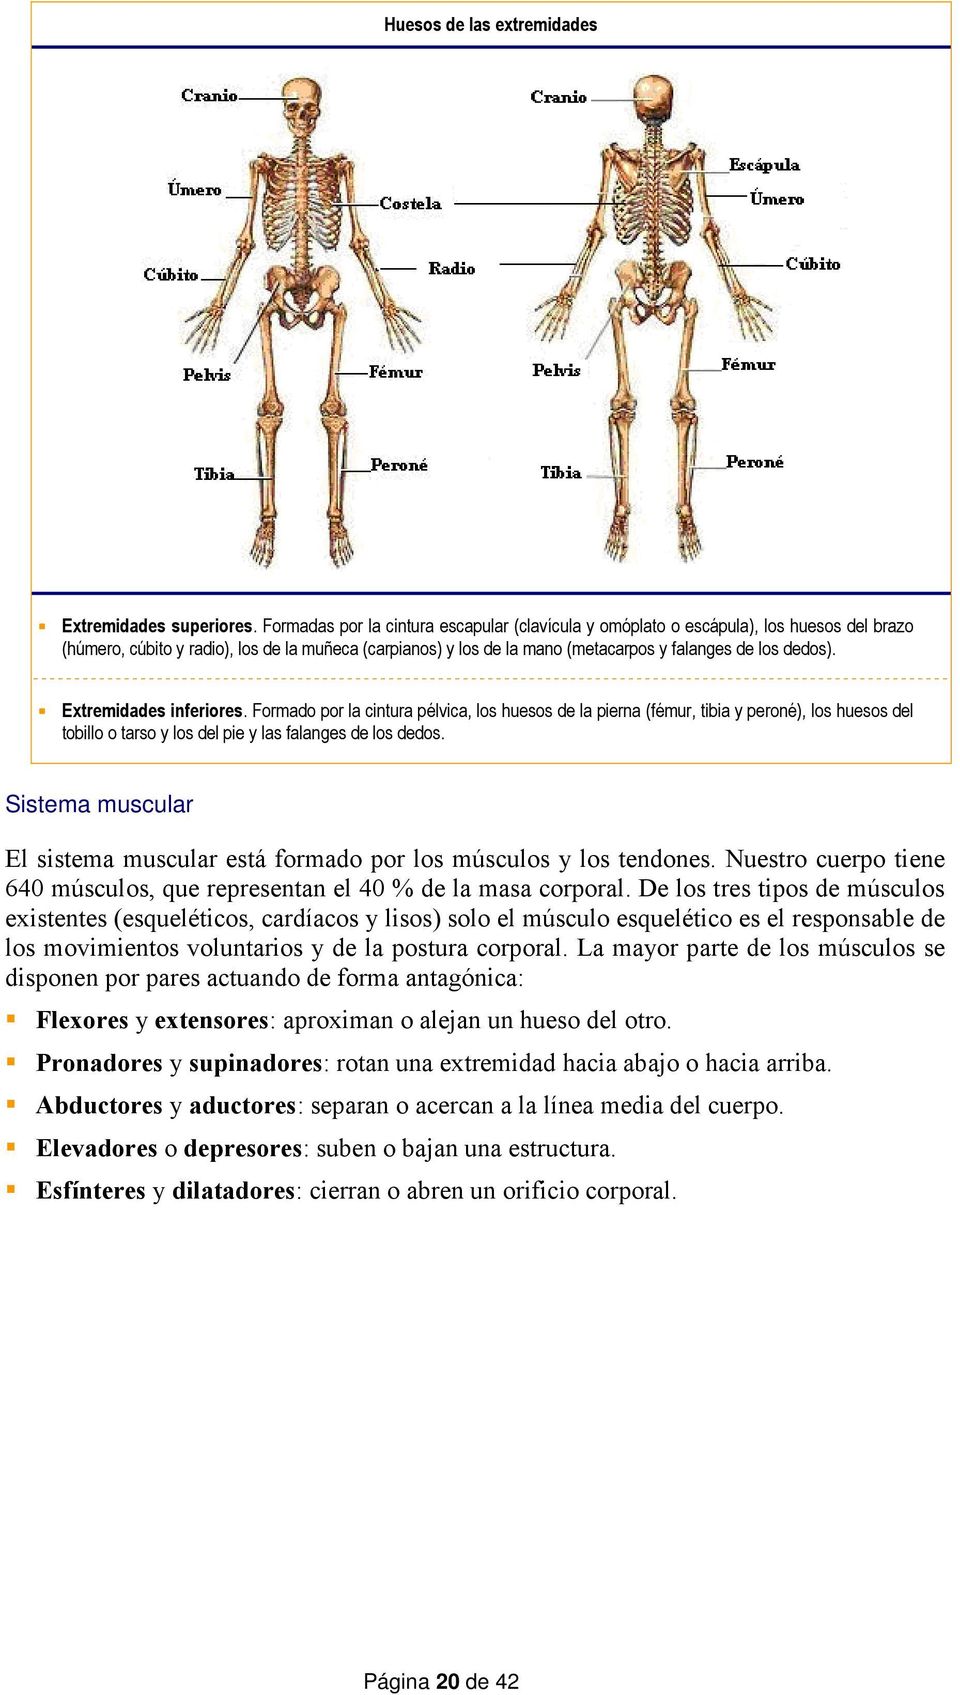 Extremidades inferiores. Formado por la cintura pélvica, los huesos de la pierna (fémur, tibia y peroné), los huesos del tobillo o tarso y los del pie y las falanges de los dedos.